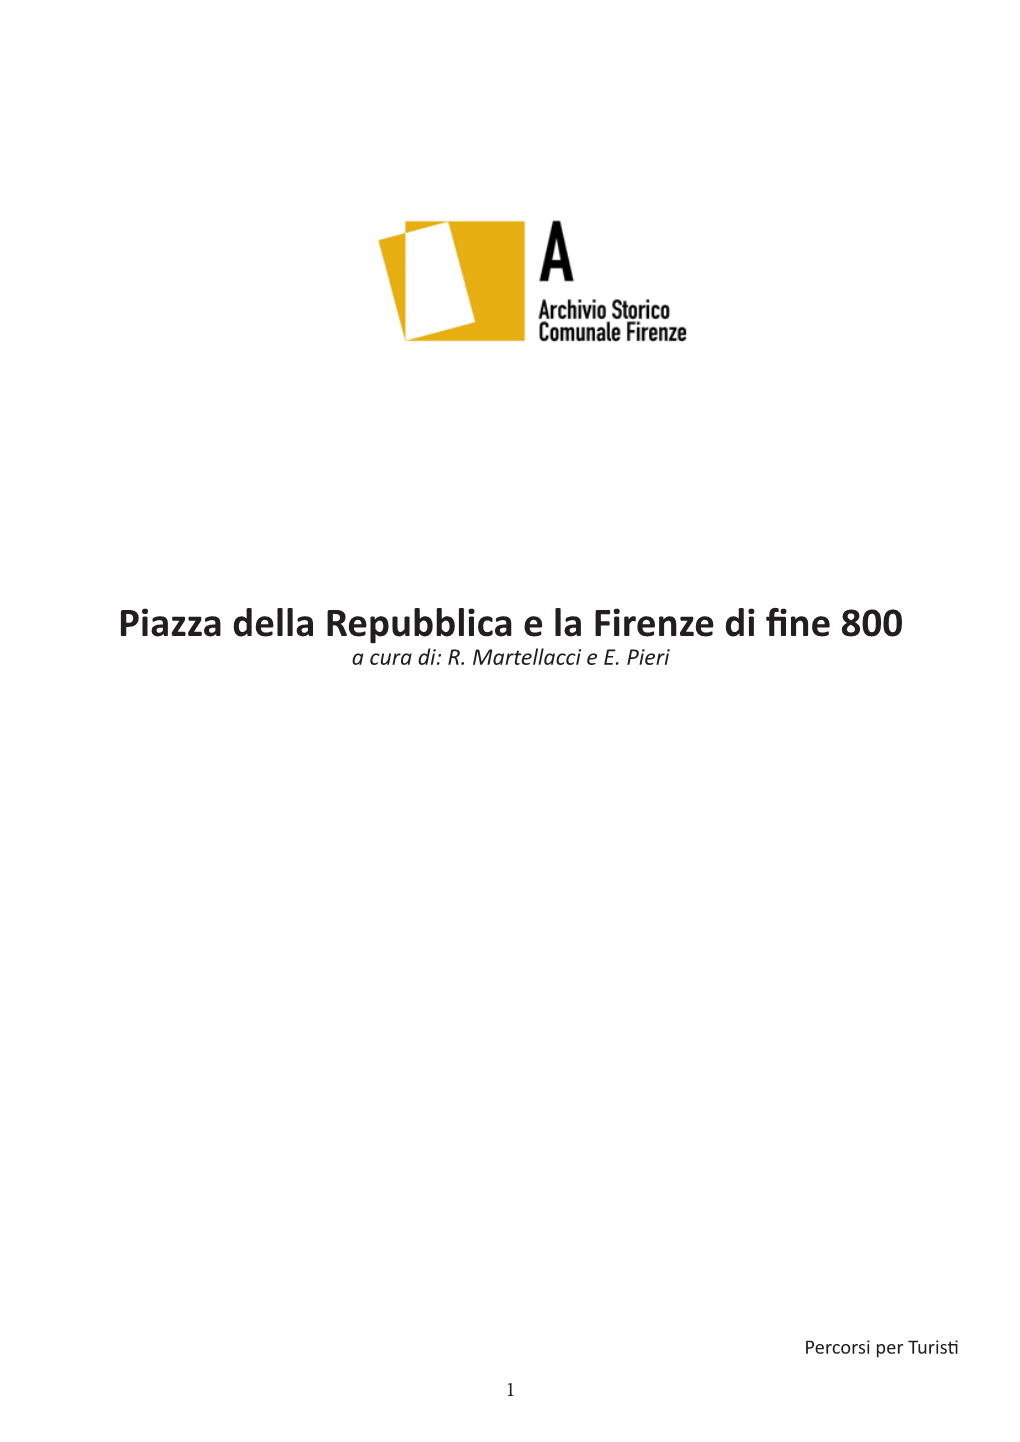 Piazza Della Repubblica E La Firenze Di Fine 800 a Cura Di: R